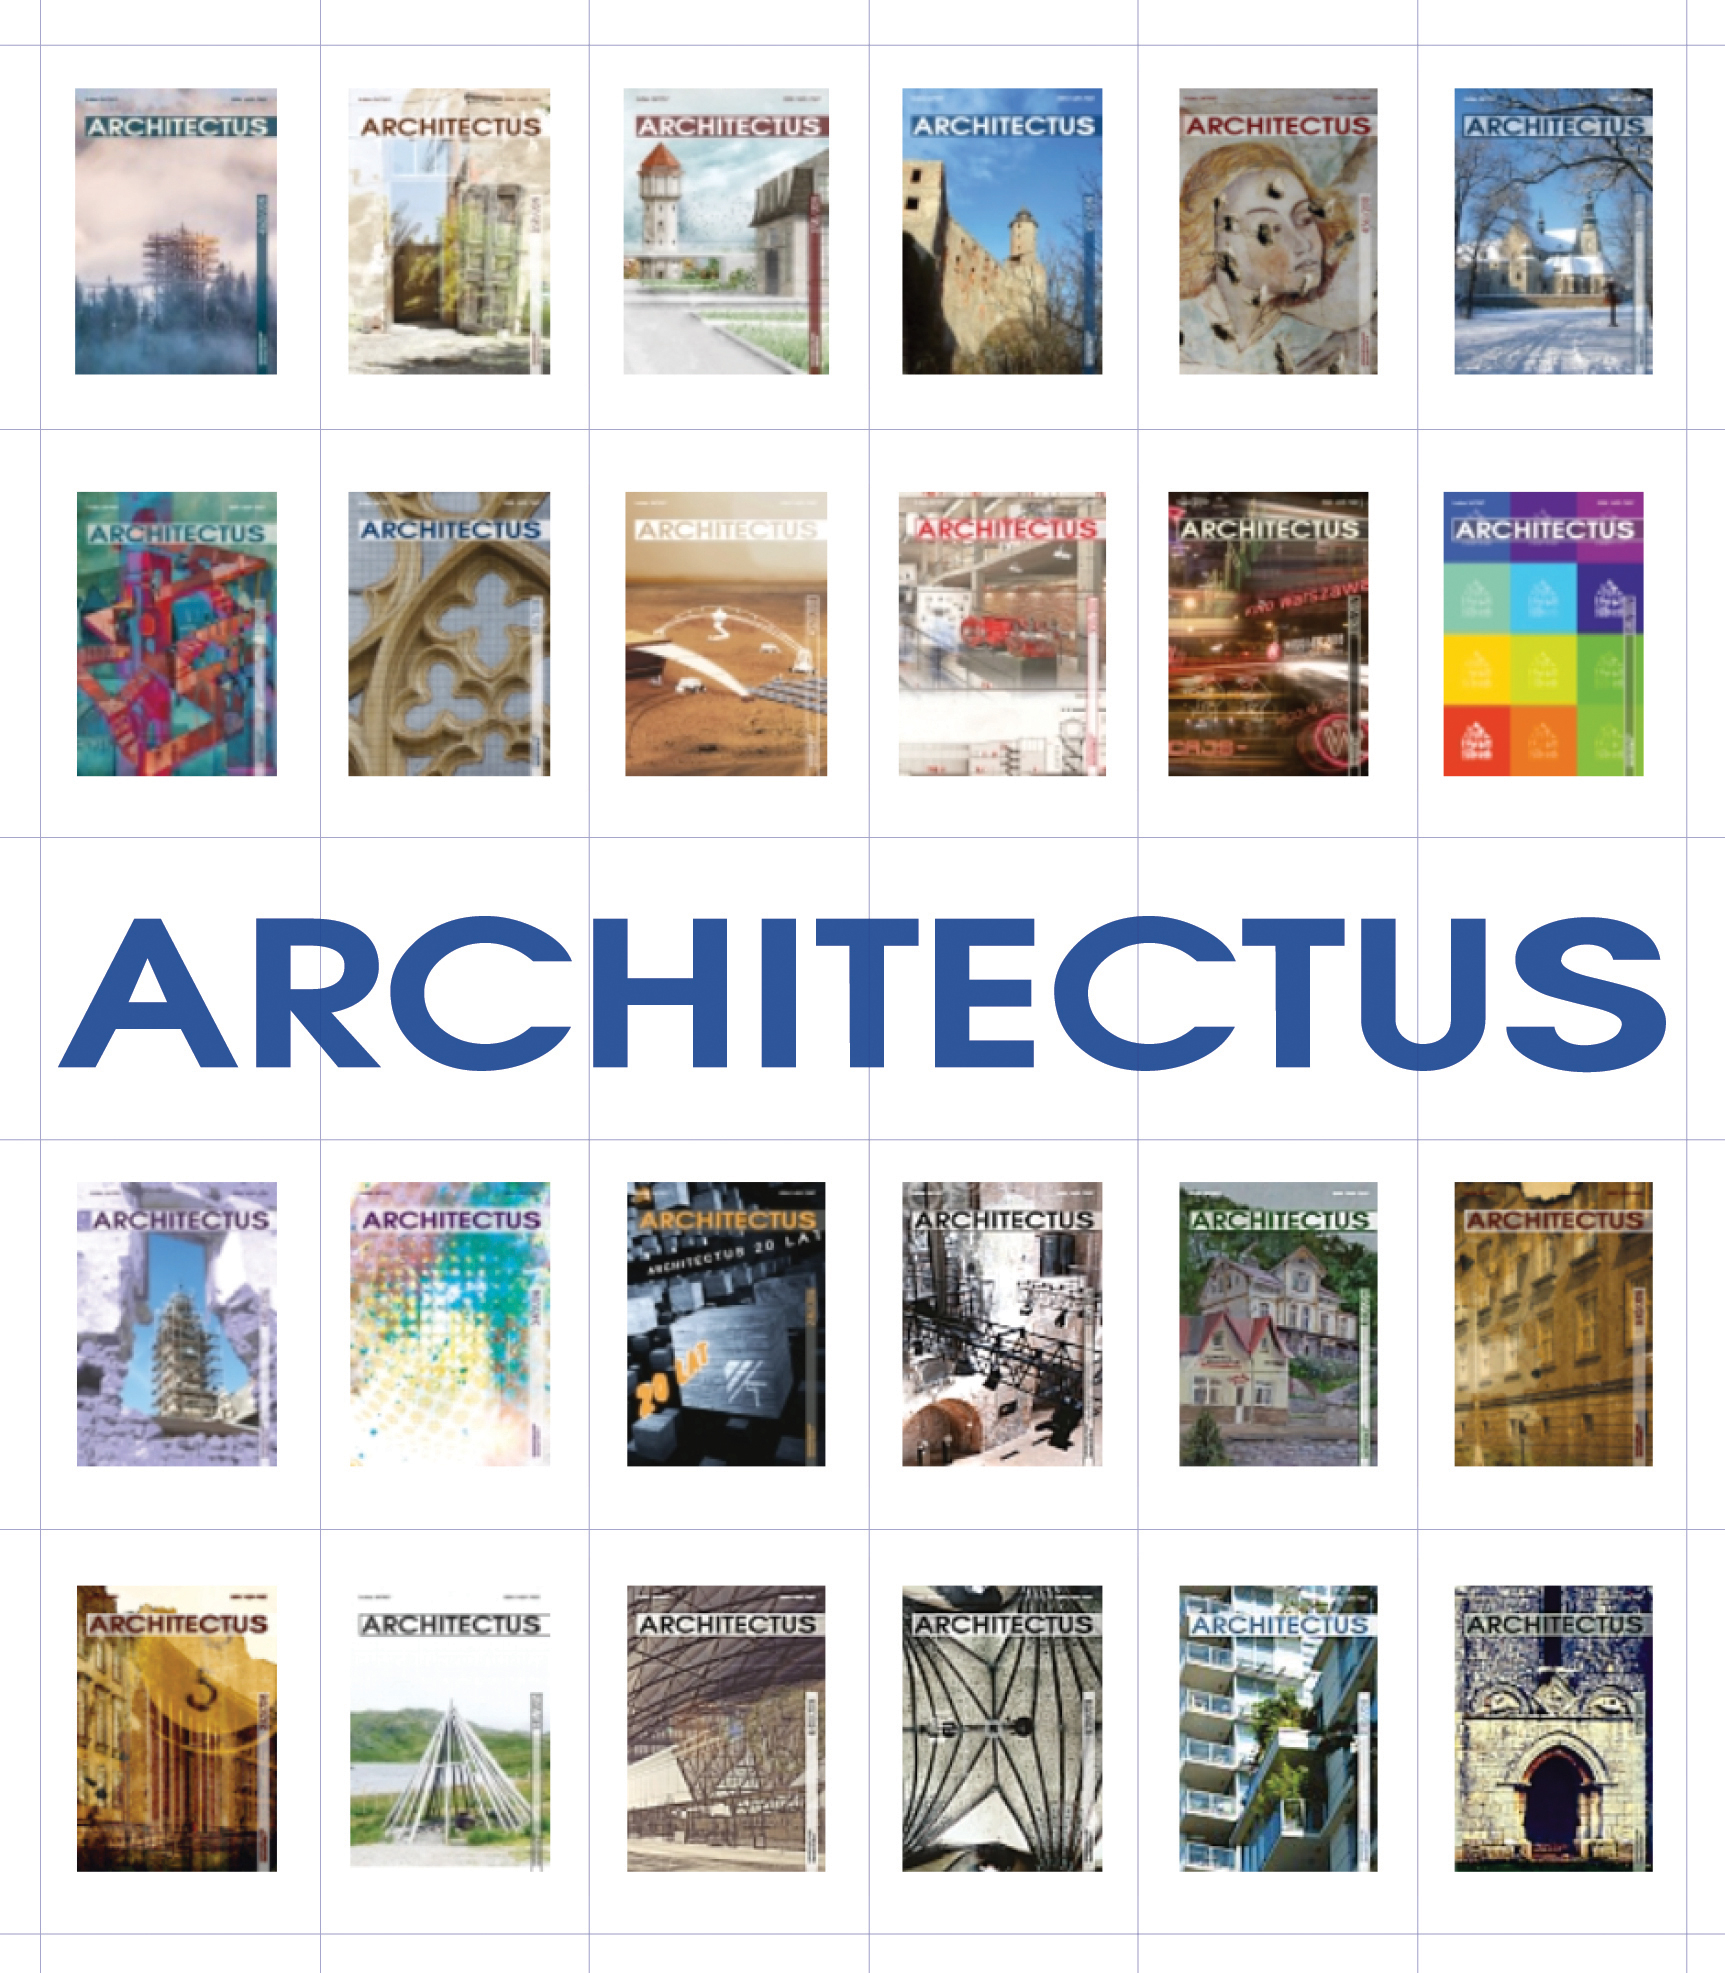 architectus_70c.jpg